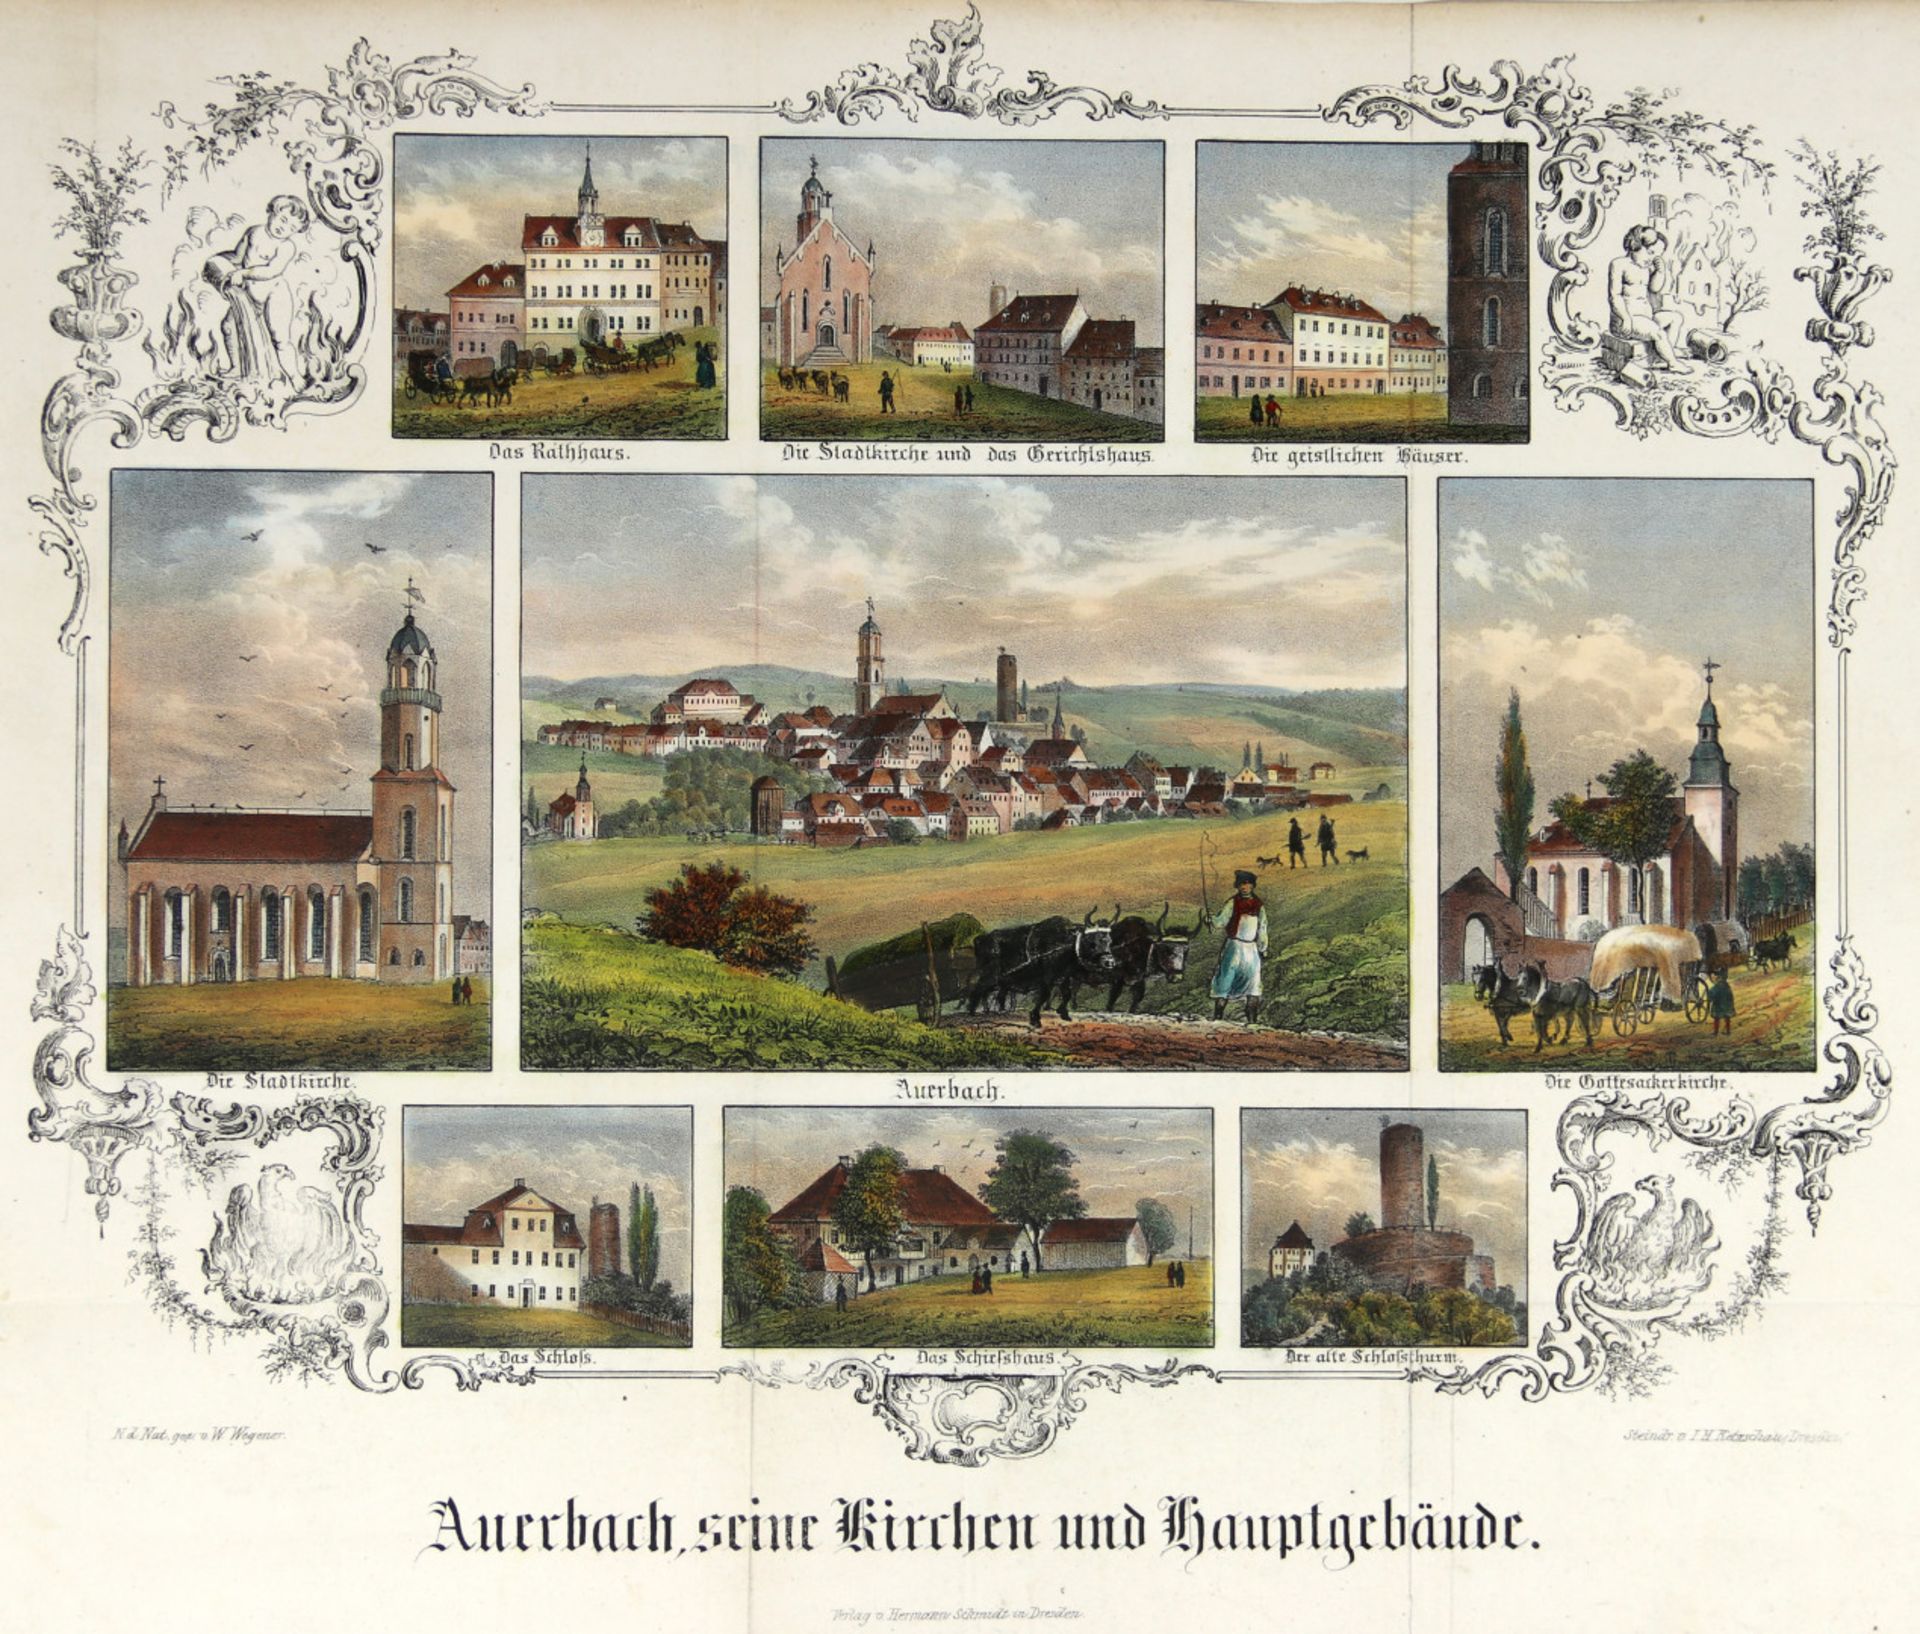 Sachsen. - Auerbach. - "Auerbach, seine Kirchen und Hauptgebäude".